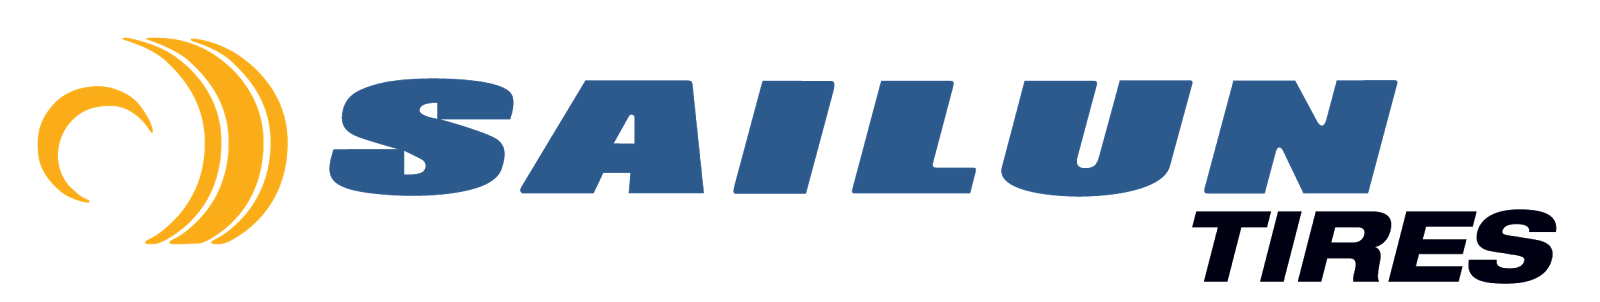 Brand logo for SAILUN tires